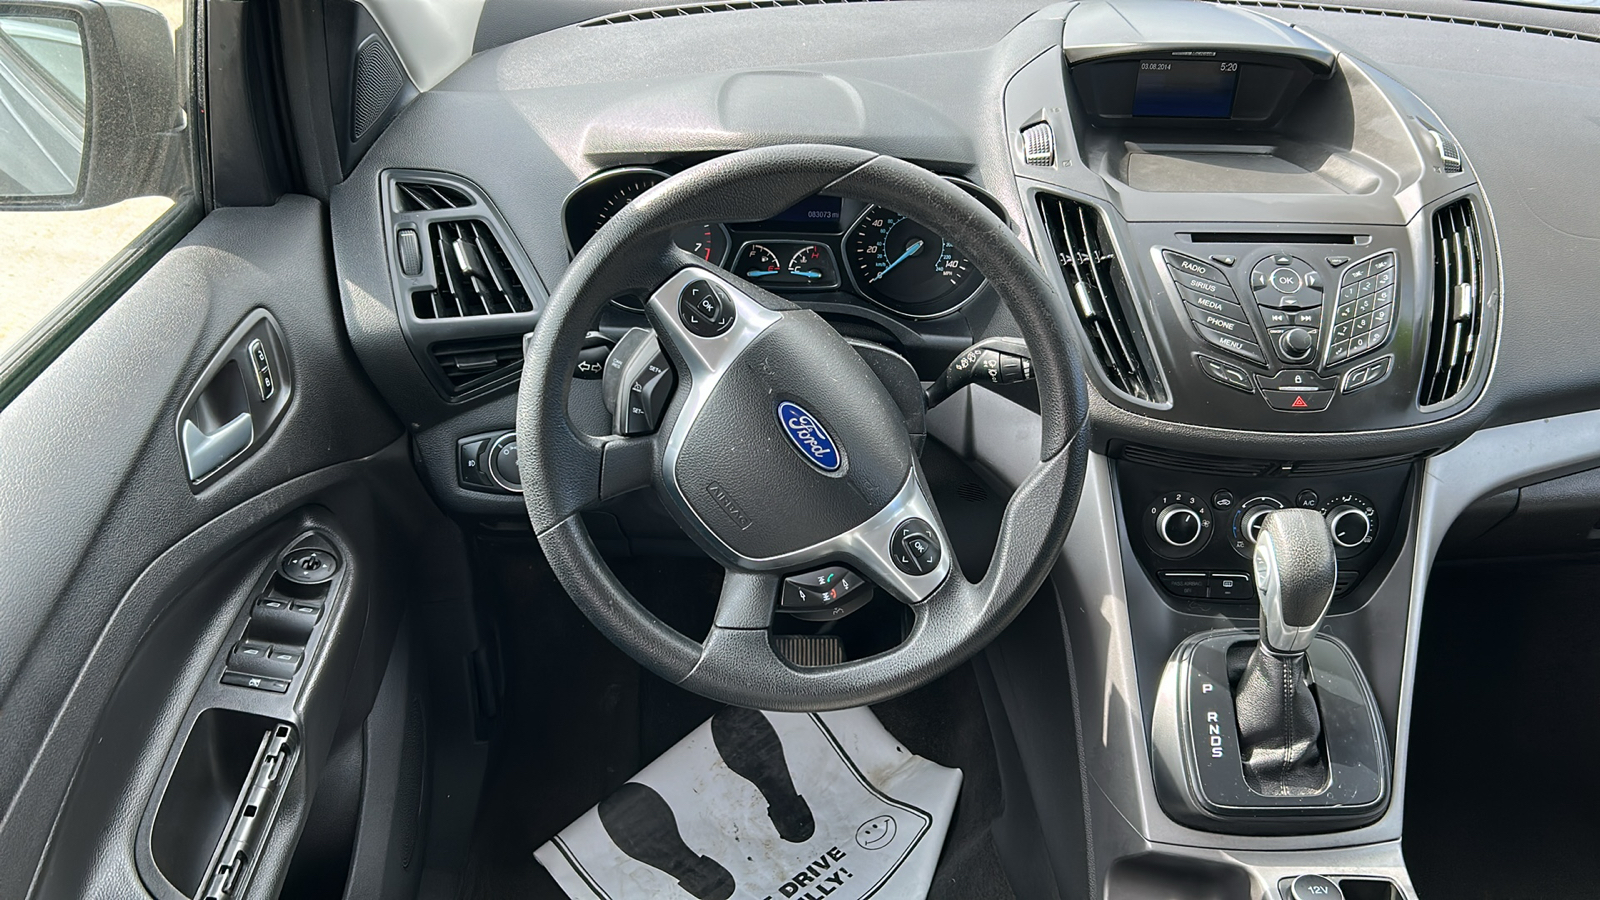 2014 Ford Escape SE 16